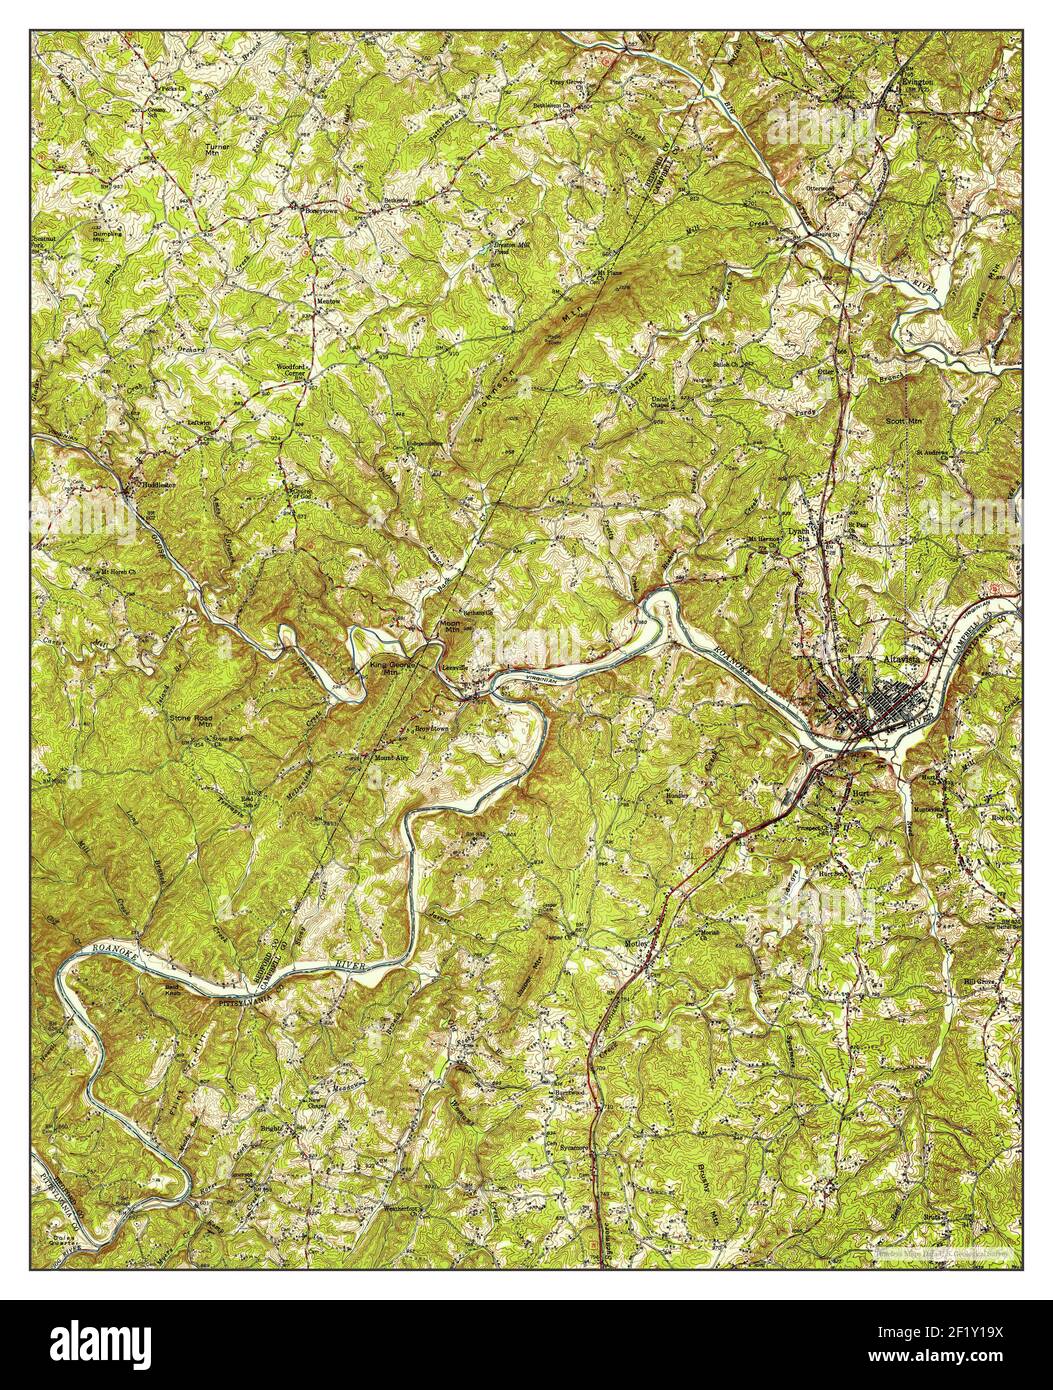 Altavista, Virginia, Karte 1951, 1:62500, Vereinigte Staaten von Amerika von Timeless Maps, Daten U.S. Geological Survey Stockfoto